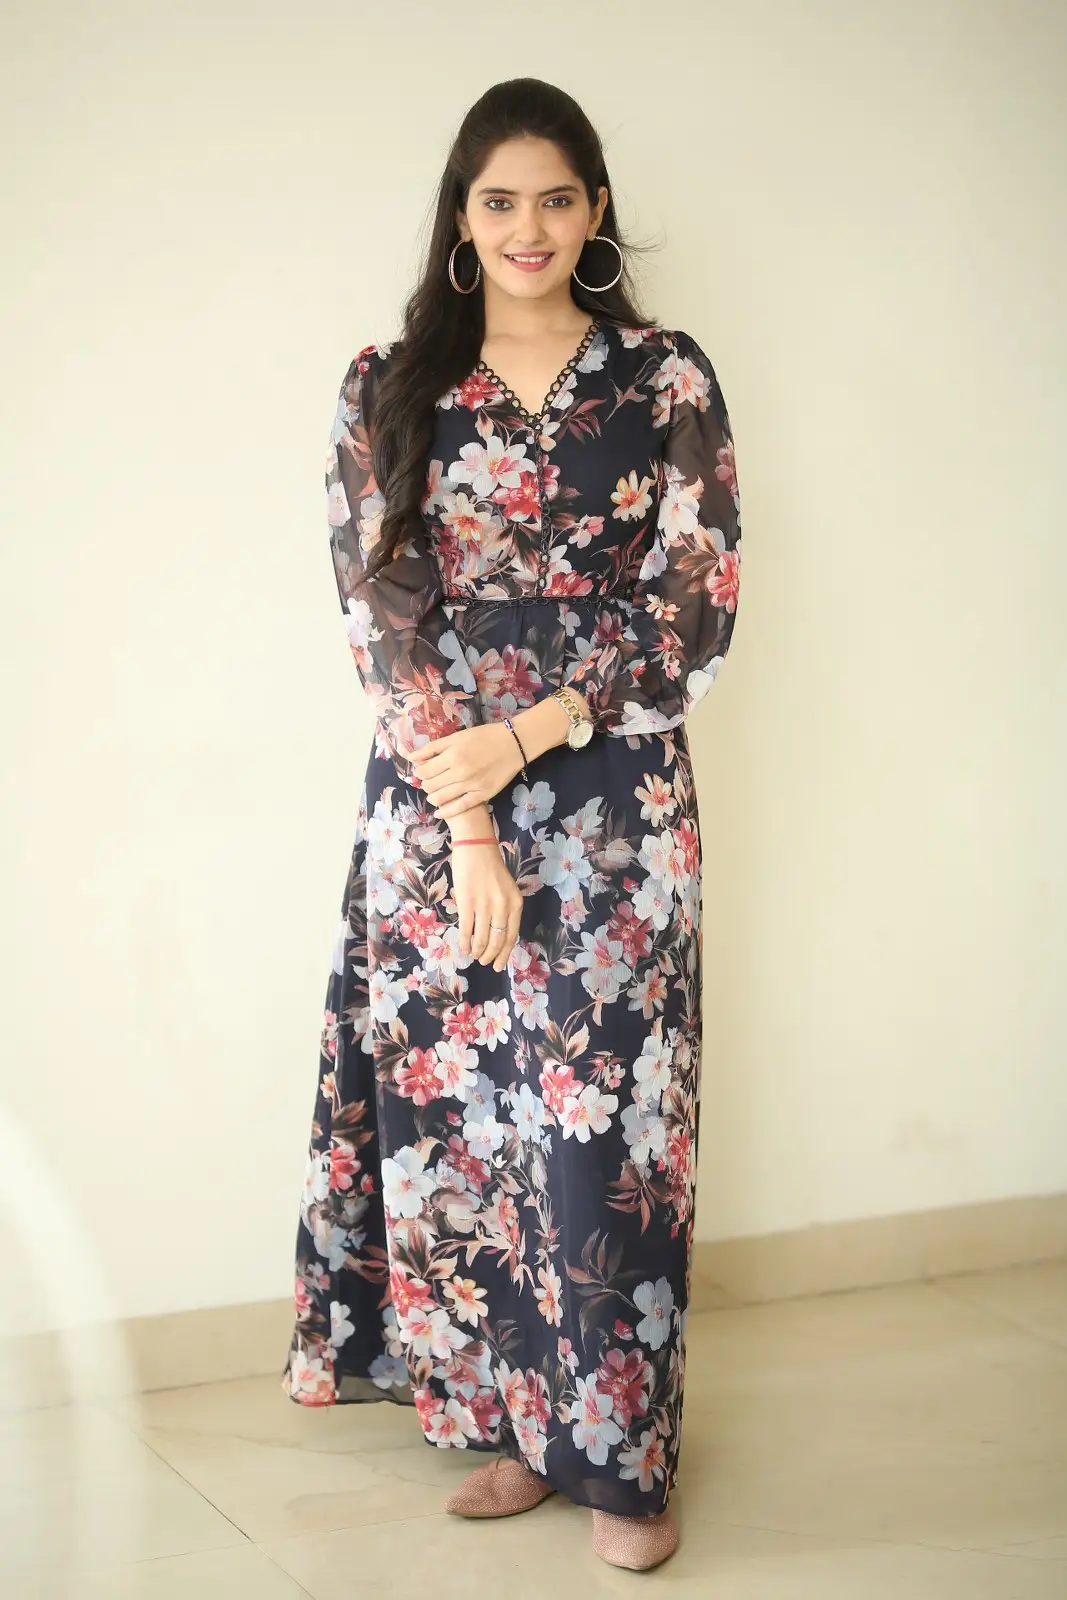 Tamil Actress Ayraa photoshoot at Atharva movie promotions